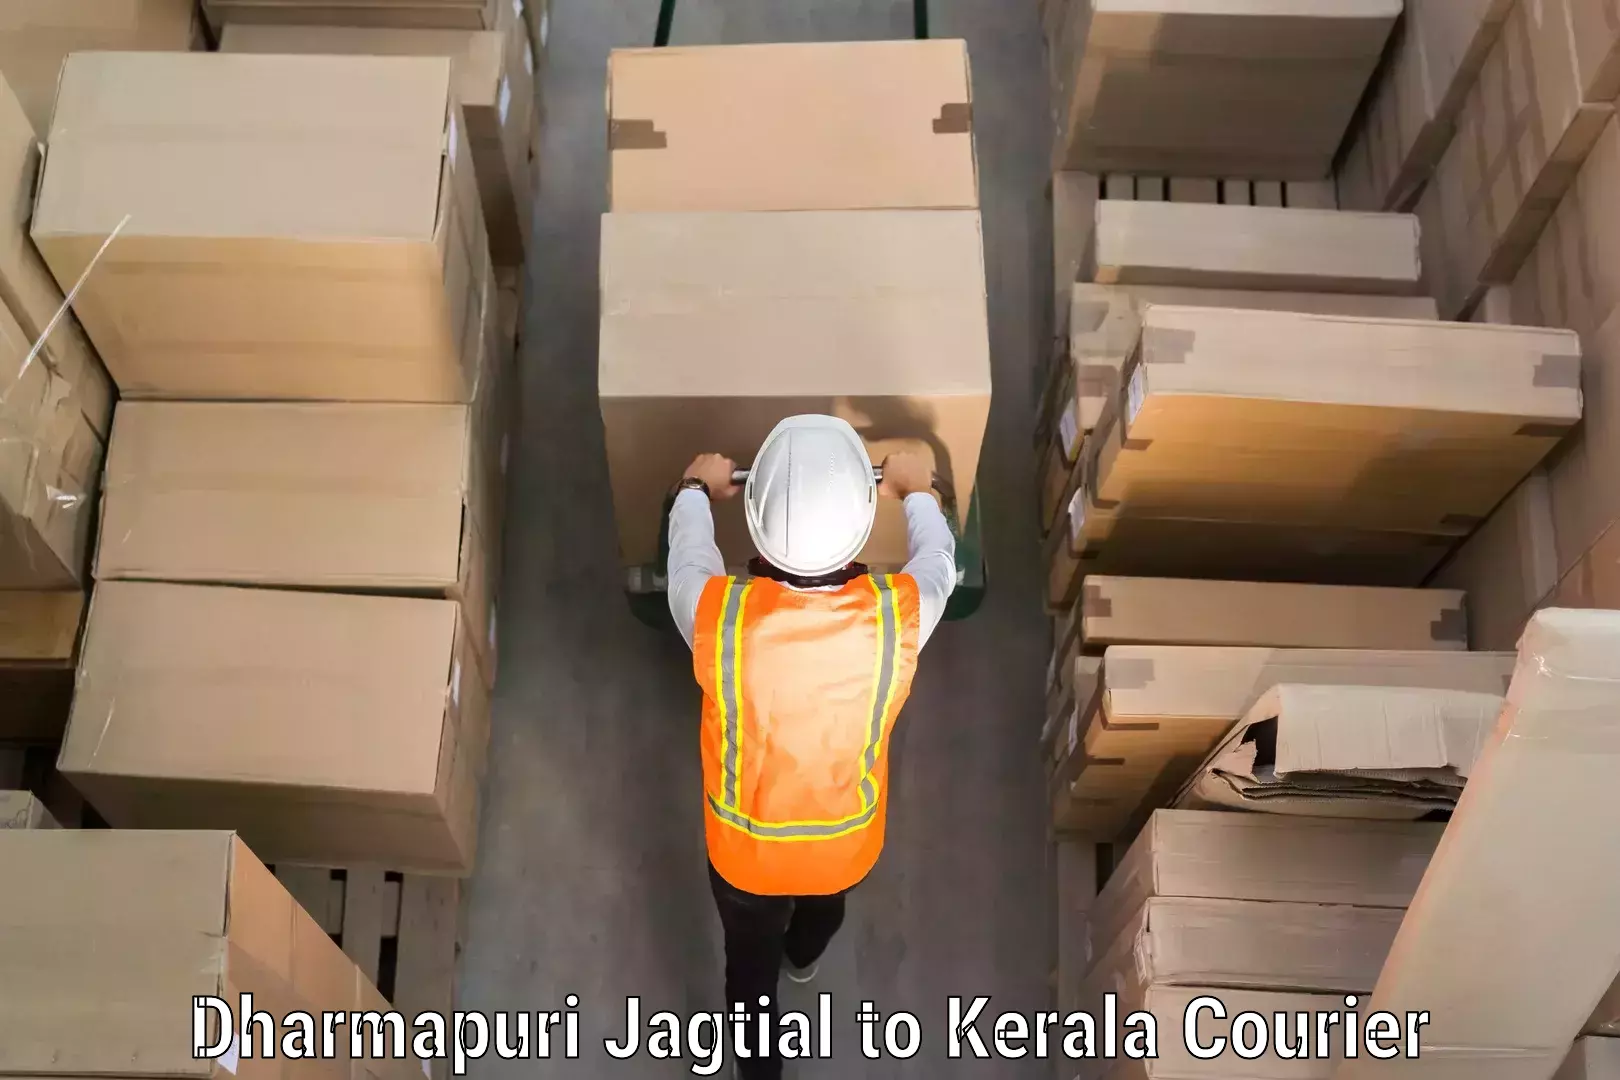 Digital baggage courier Dharmapuri Jagtial to Thrissur